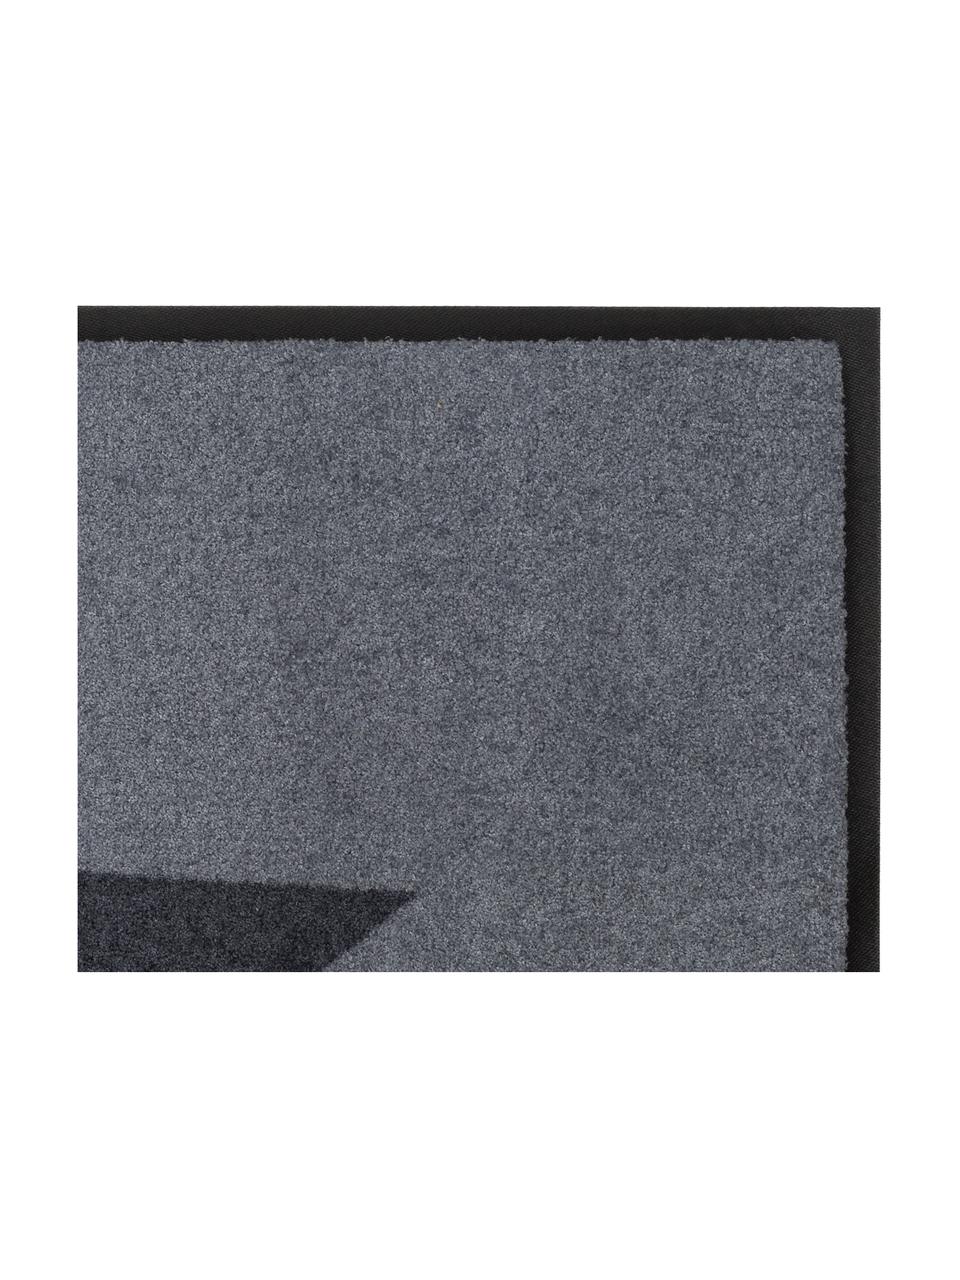 Fussmatte Big Star, Oberseite: 100% Polyamid, Unterseite: Gummi, Grau, Anthrazit, 80 x 120 cm